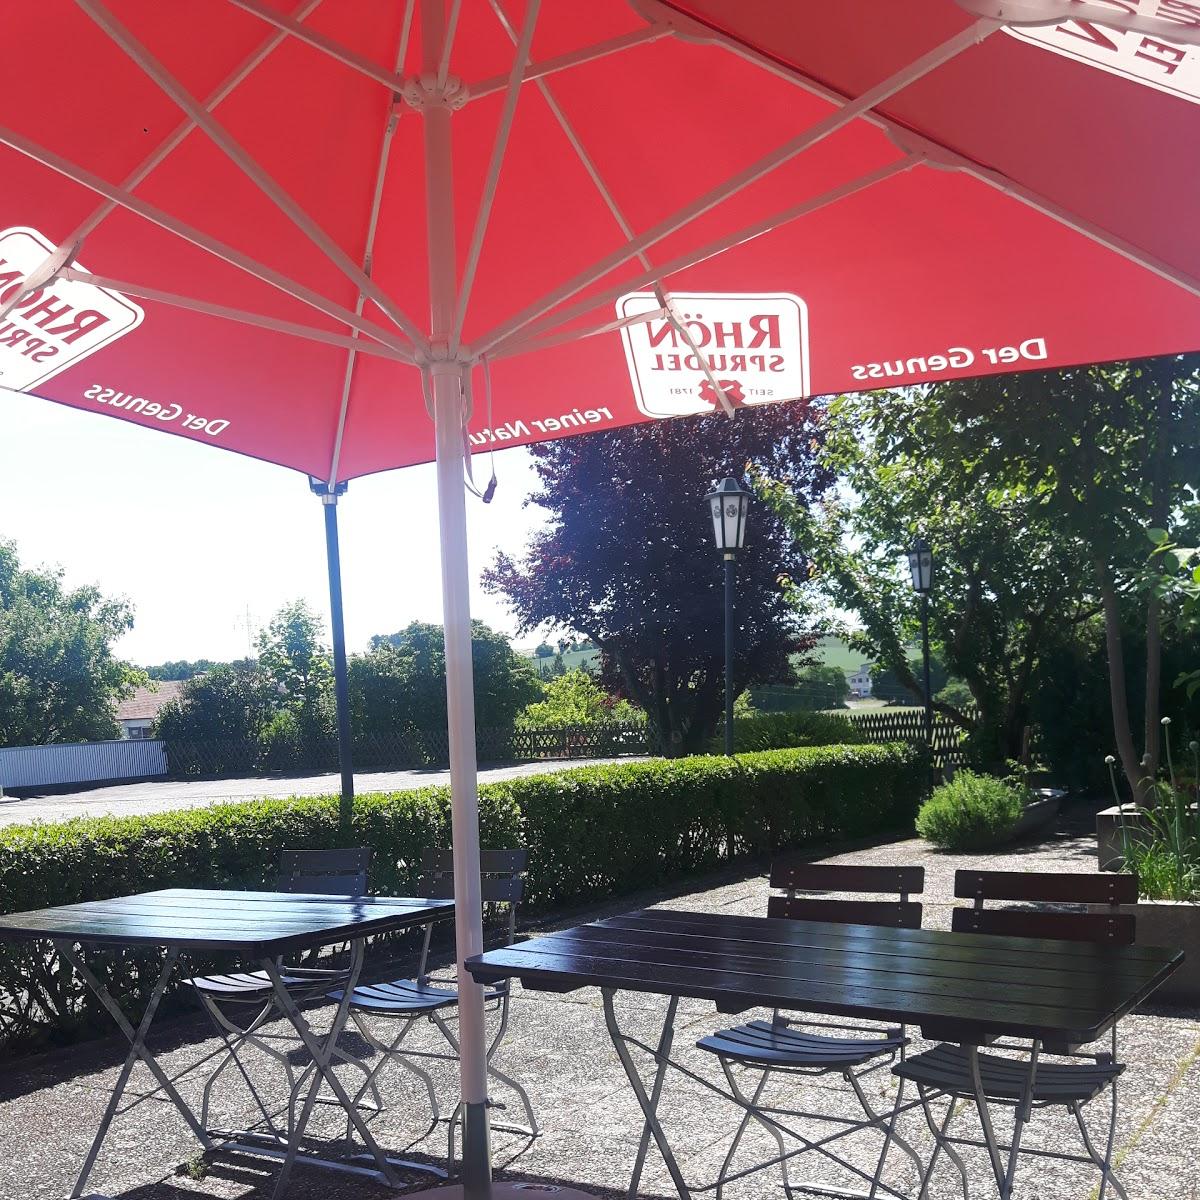 Restaurant "Zum Schlappeflicker" in Hohenroth